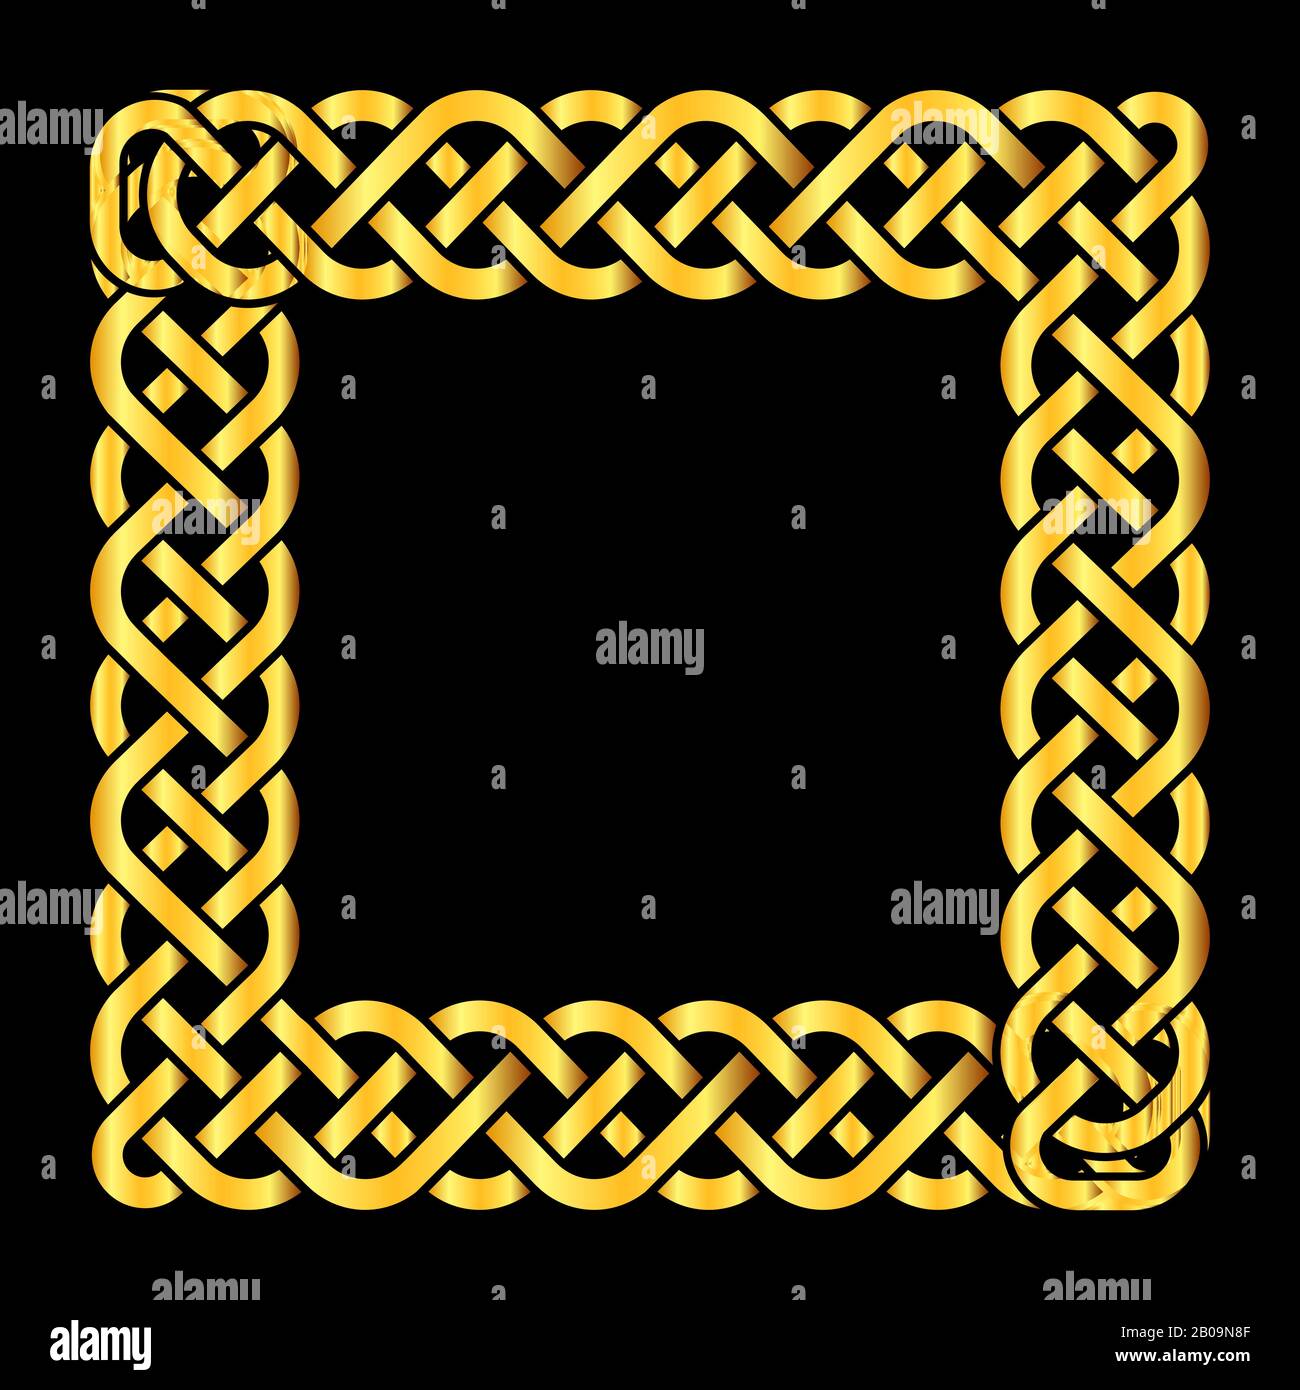 Riquadro vettoriale nodi celtici dorati quadrati. Illustrazione isolata dell'elemento di decorazione Illustrazione Vettoriale